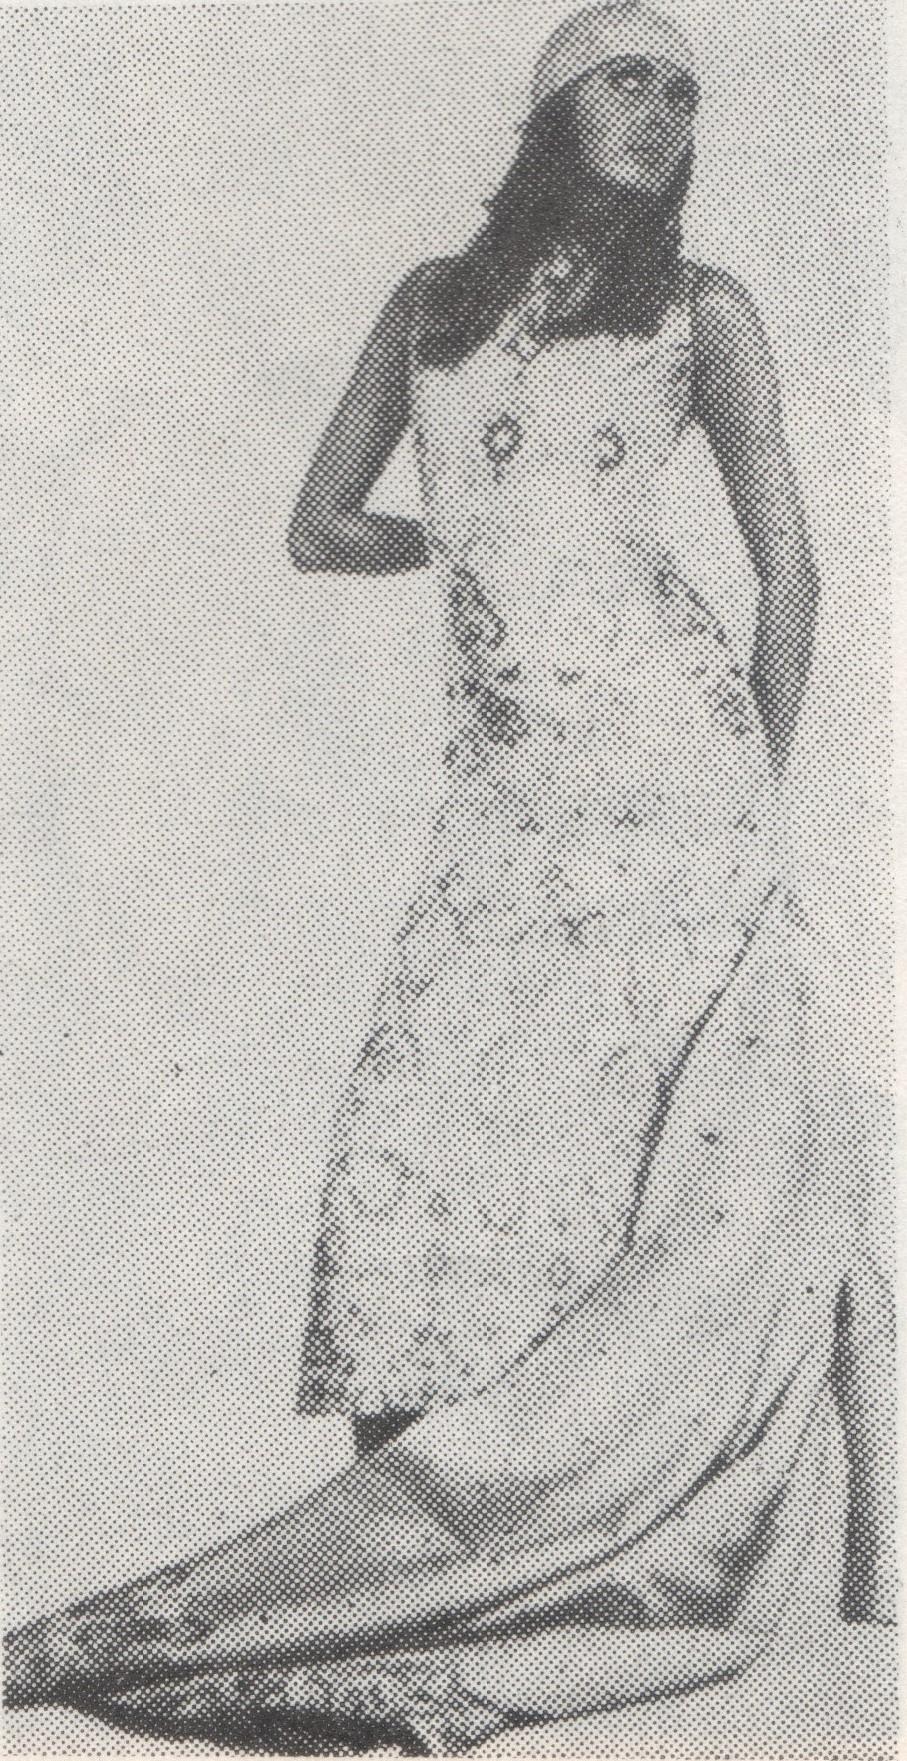 Вечернее платье. Журнал «Linea Italiana». Сезон 1970/71